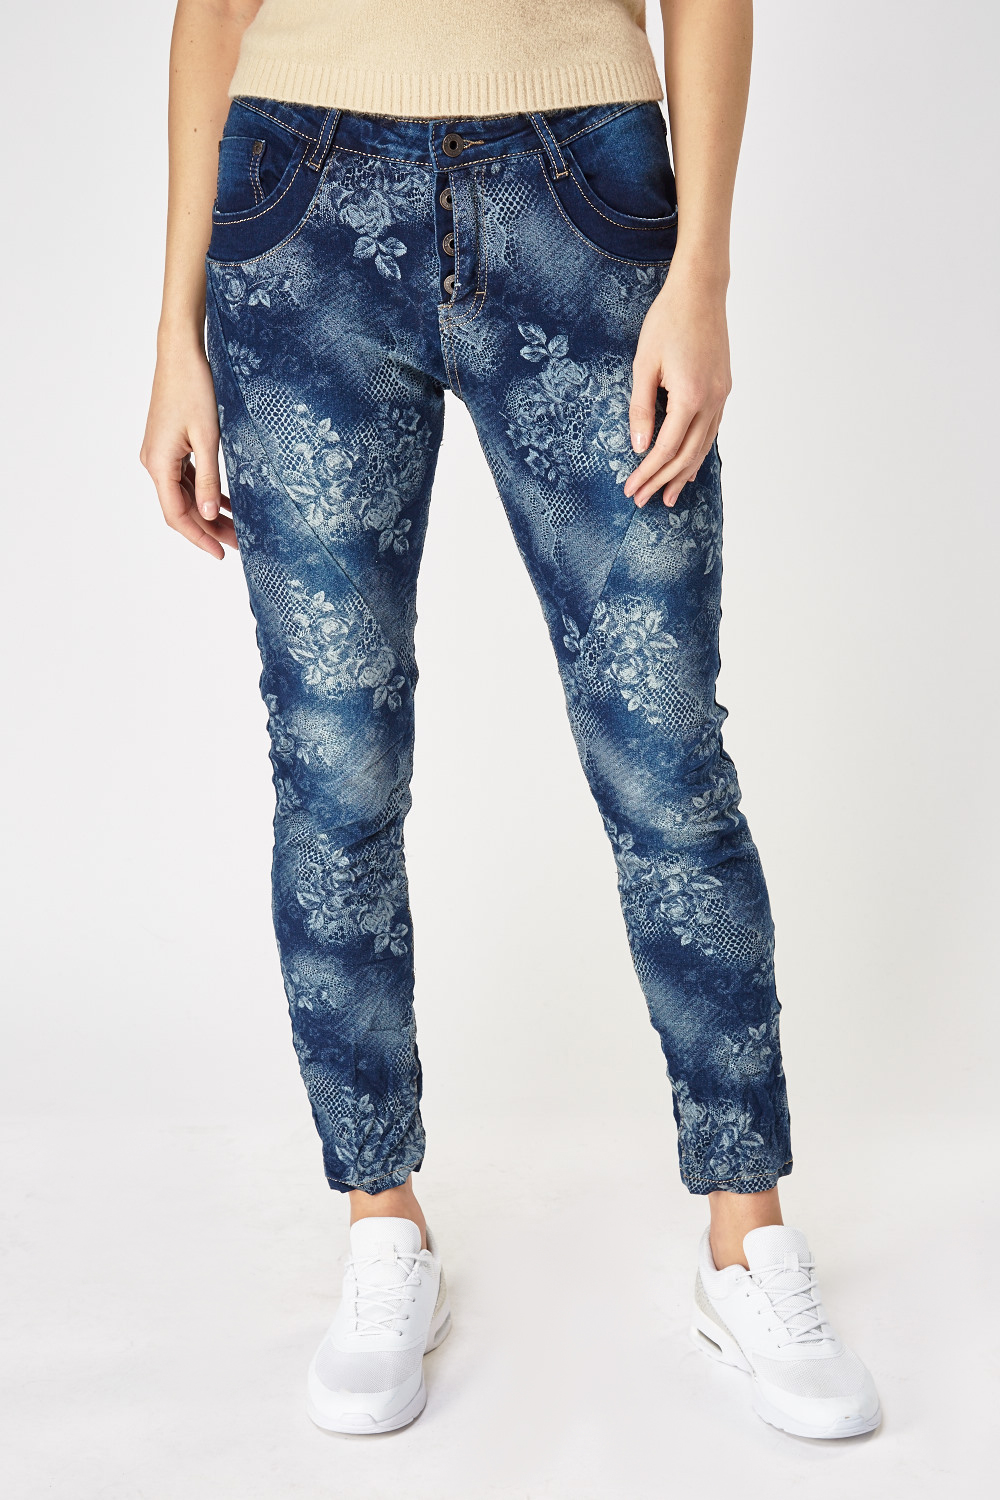 Floral Crinkled Blue Denim Jeans - Just $3